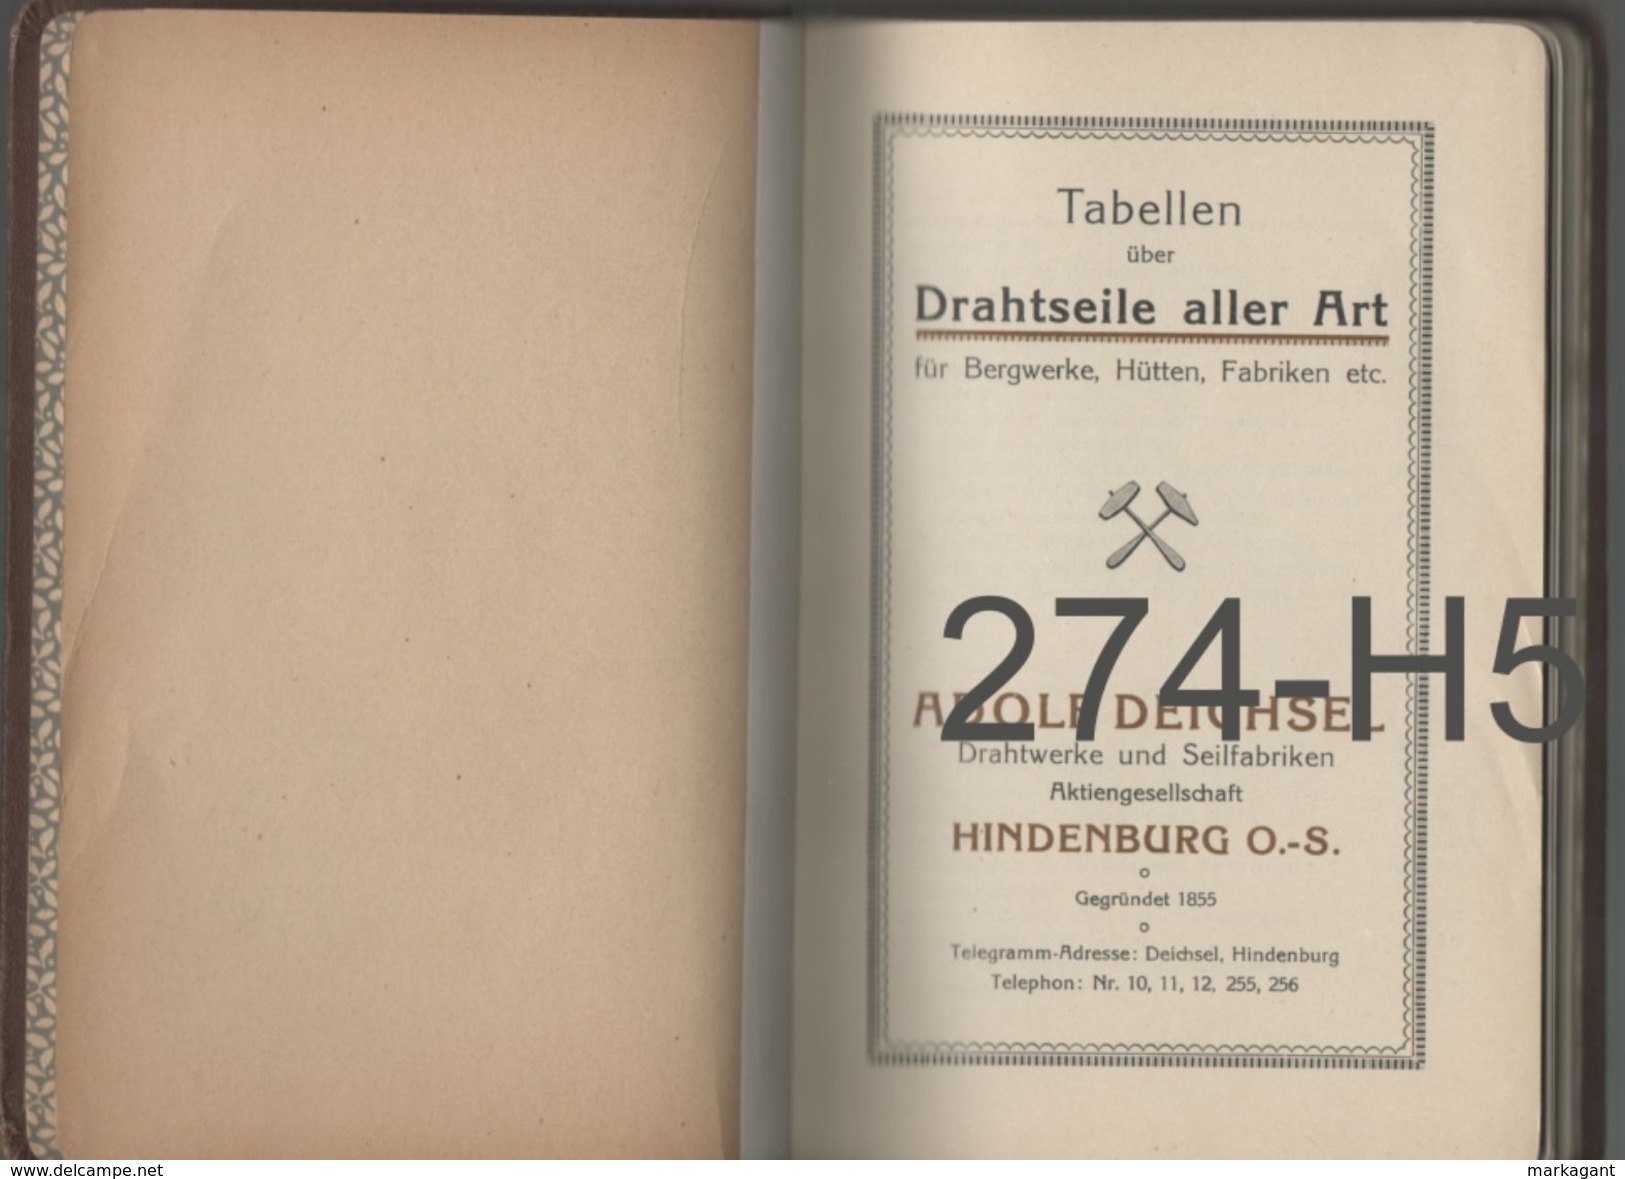 ADOLF DEICHSEL DRAHTWERKE UND SEILFABRIKEN / TABELLEN - Catalogues